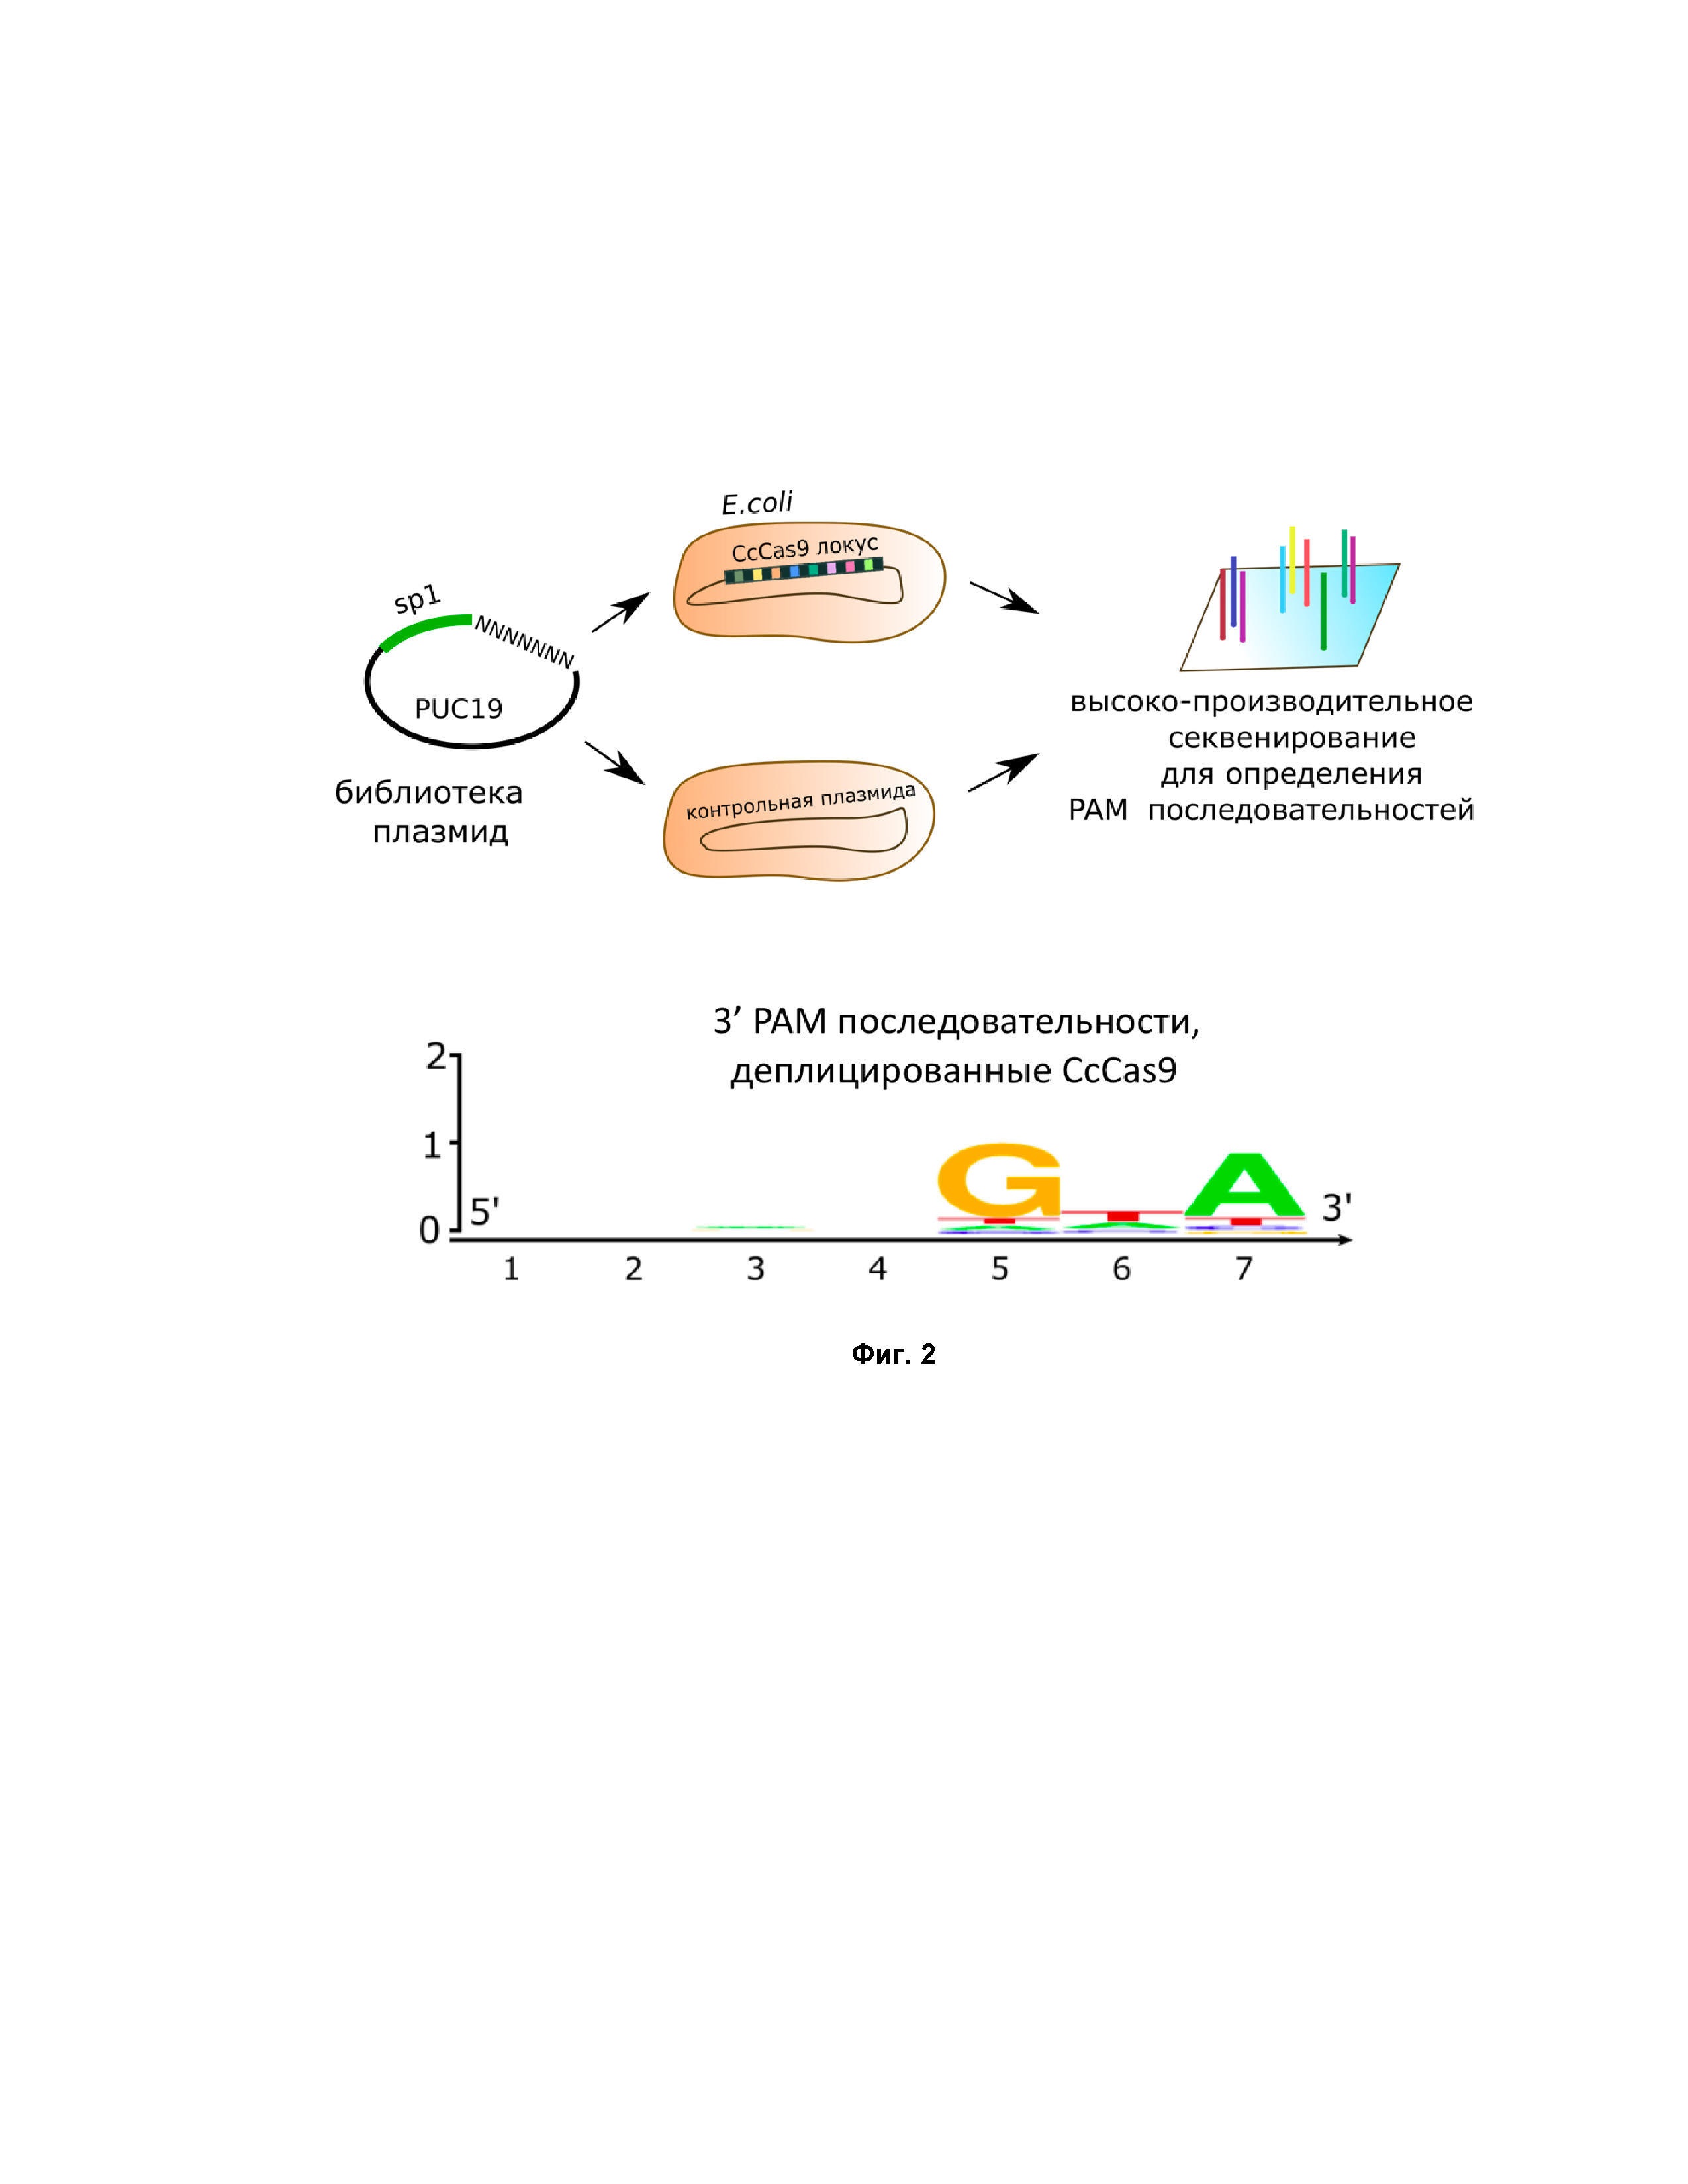 Средство разрезания ДНК на основе Cas9 белка из биотехнологически значимой бактерии Clostridium cellulolyticum